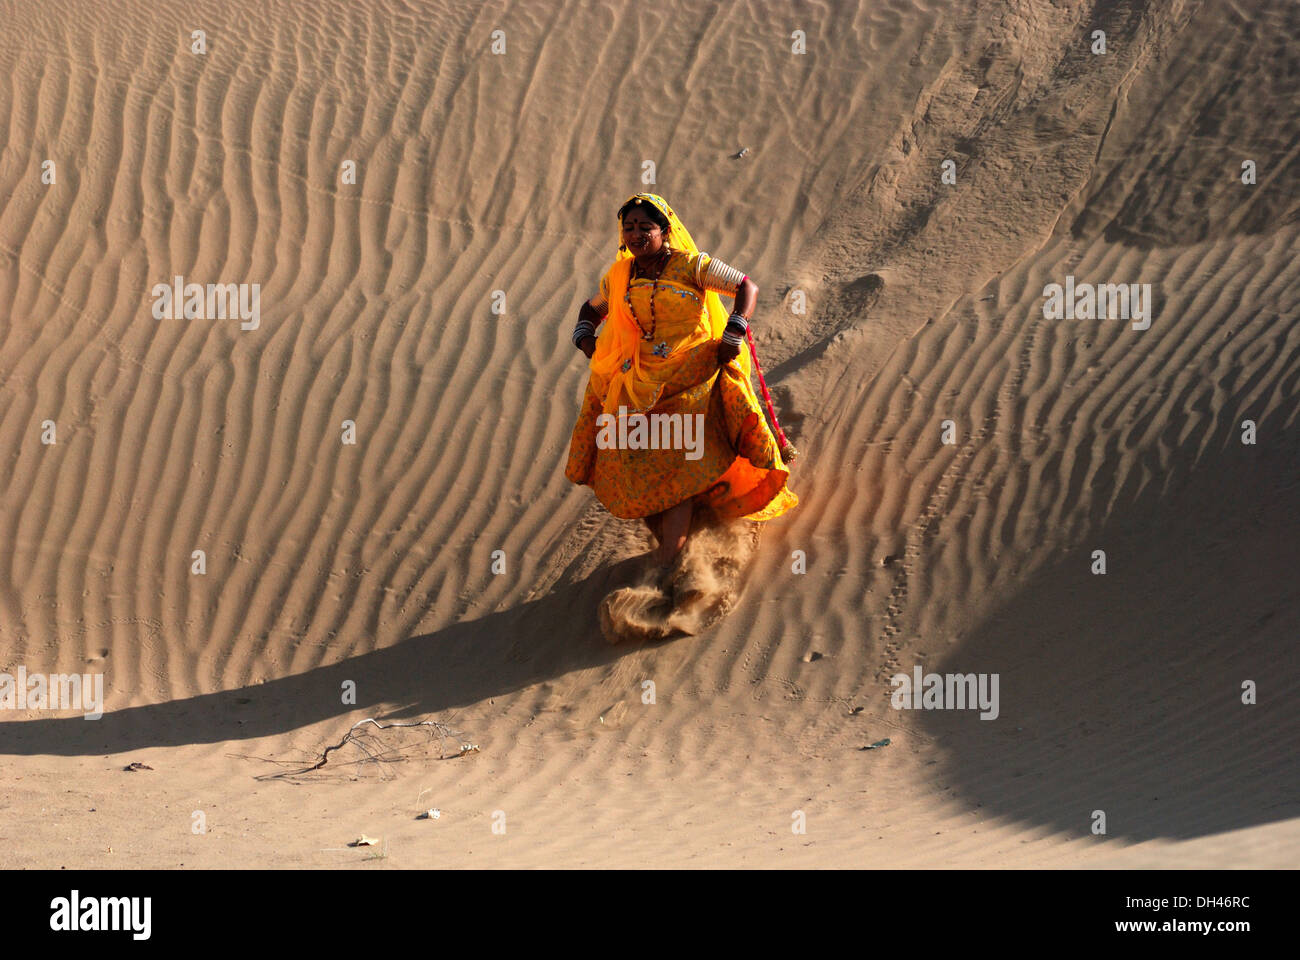 Indische Frau liefen Wüste Sand Dune Jaisalmer Rajasthan Indien Asien Herr # 784 Stockfoto